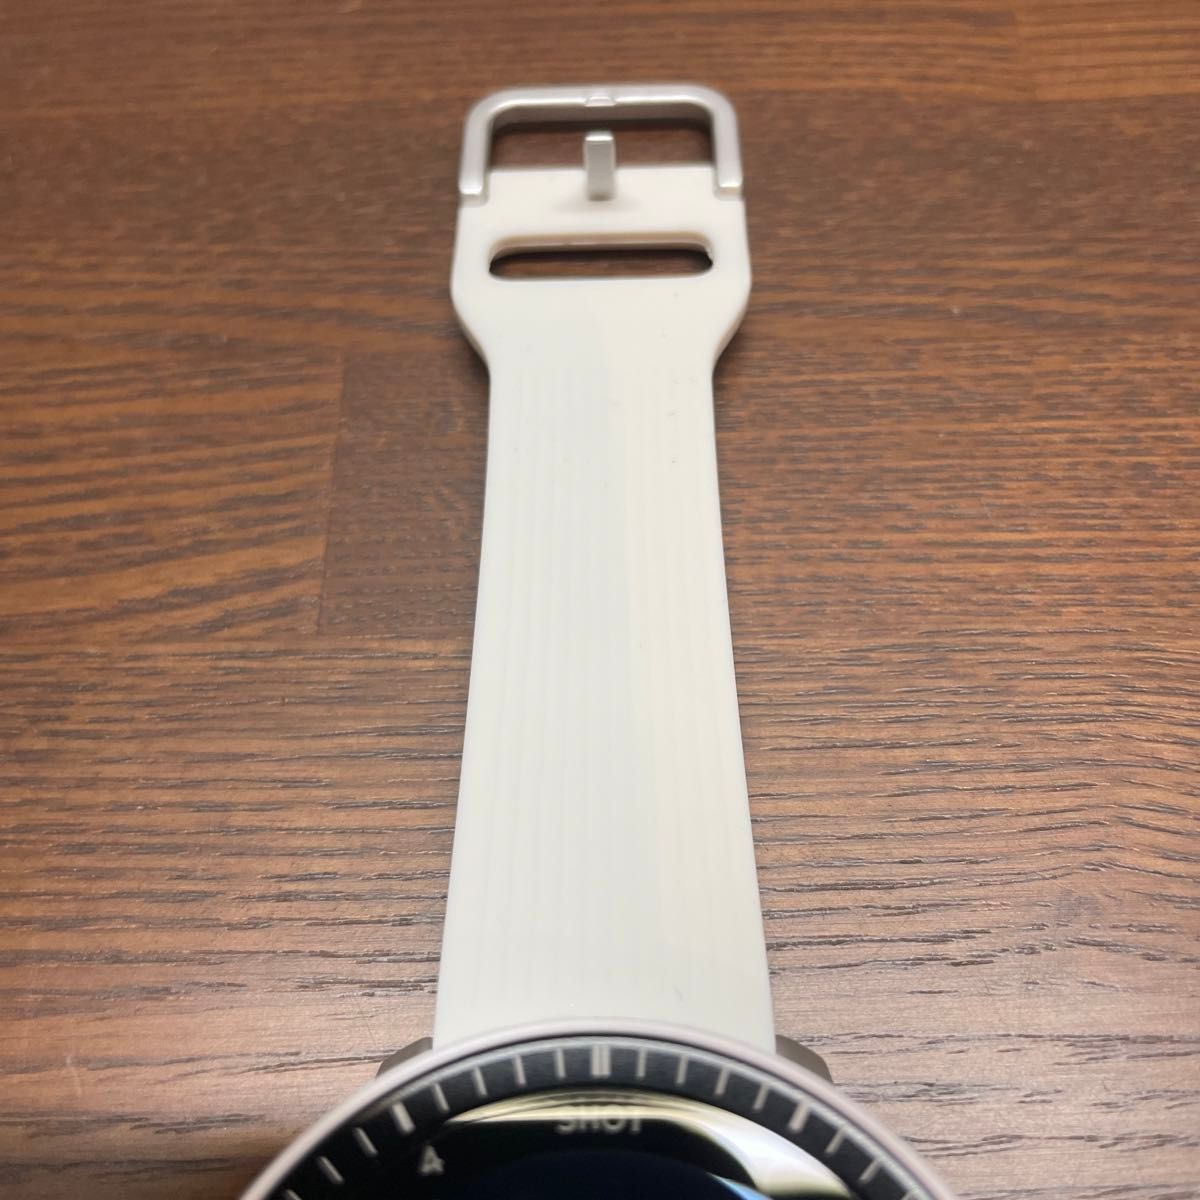 ボイスキャディ T-Ultra  ホワイト ティーウルトラ GPSナビ 腕時計型  VOICE CADDIE  ゴルフウォッチ